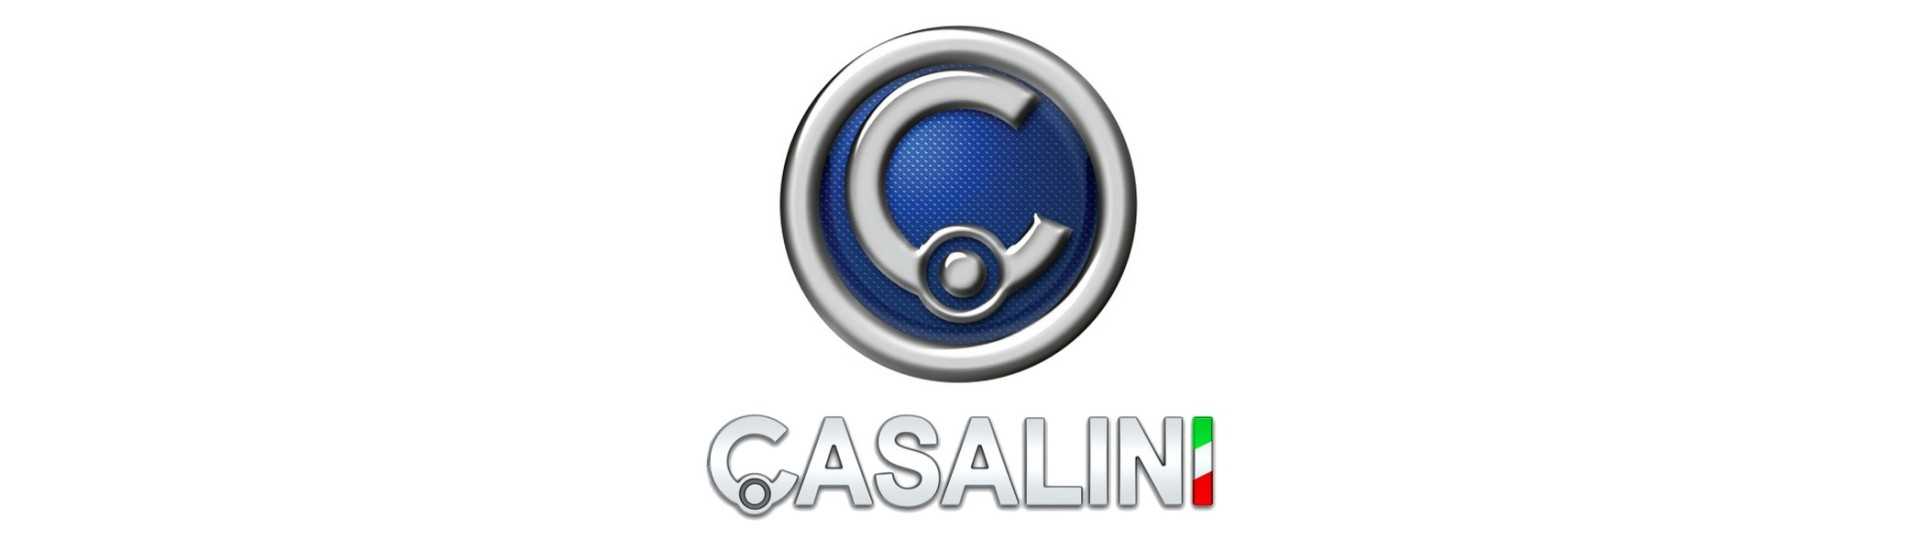 Quantidade de pára-brisa com o melhor preço para um carro sem licença Casalini